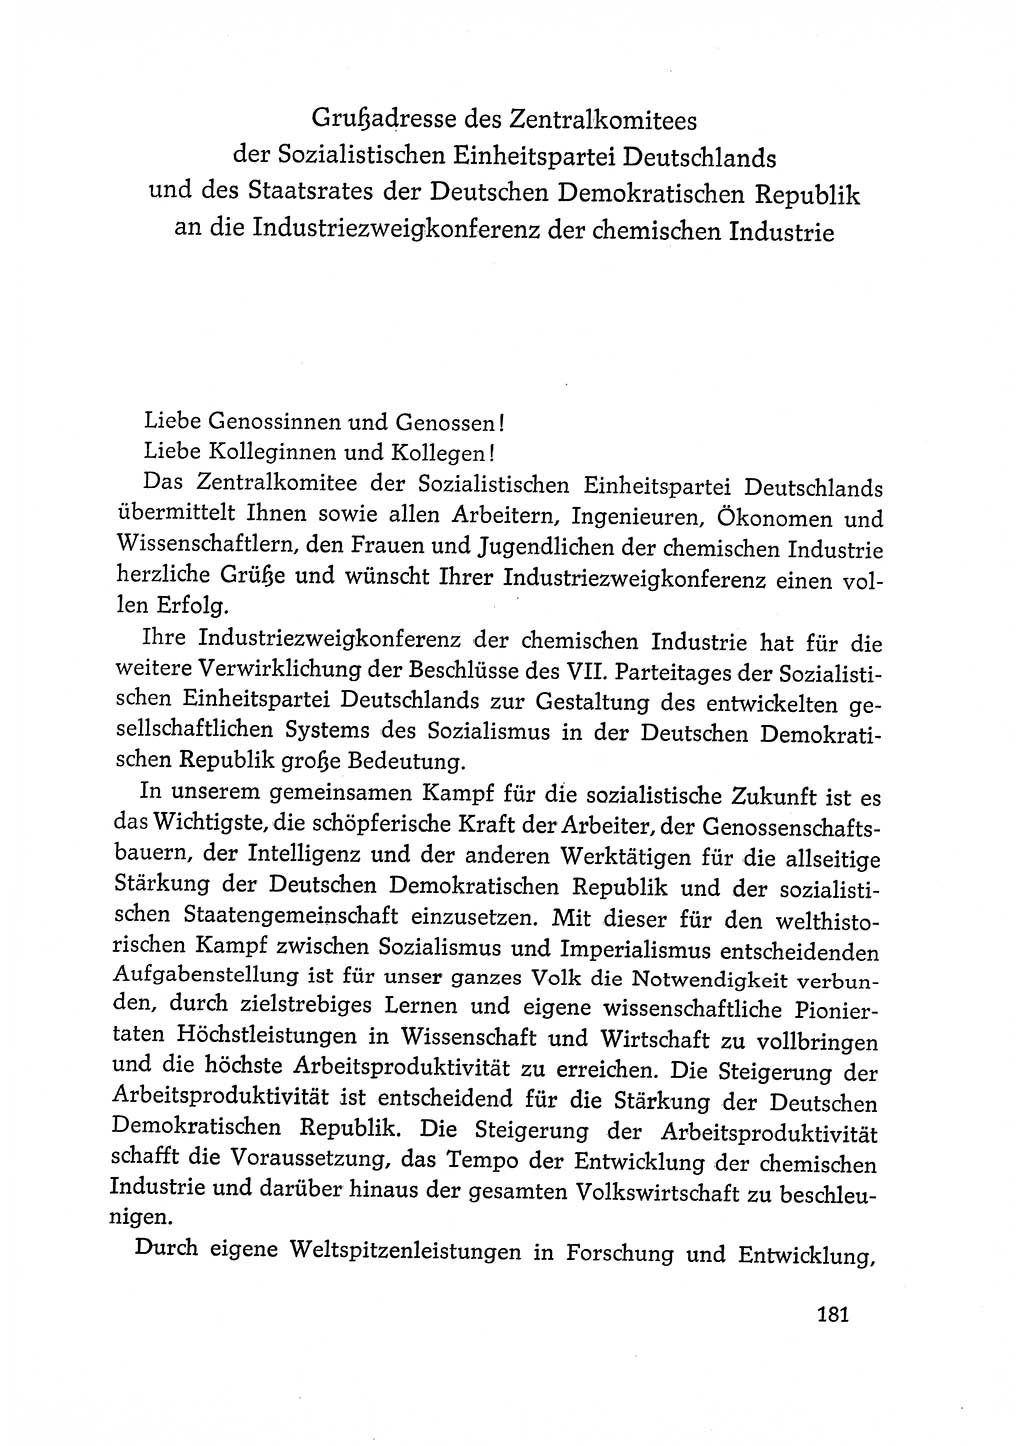 Dokumente der Sozialistischen Einheitspartei Deutschlands (SED) [Deutsche Demokratische Republik (DDR)] 1968-1969, Seite 181 (Dok. SED DDR 1968-1969, S. 181)